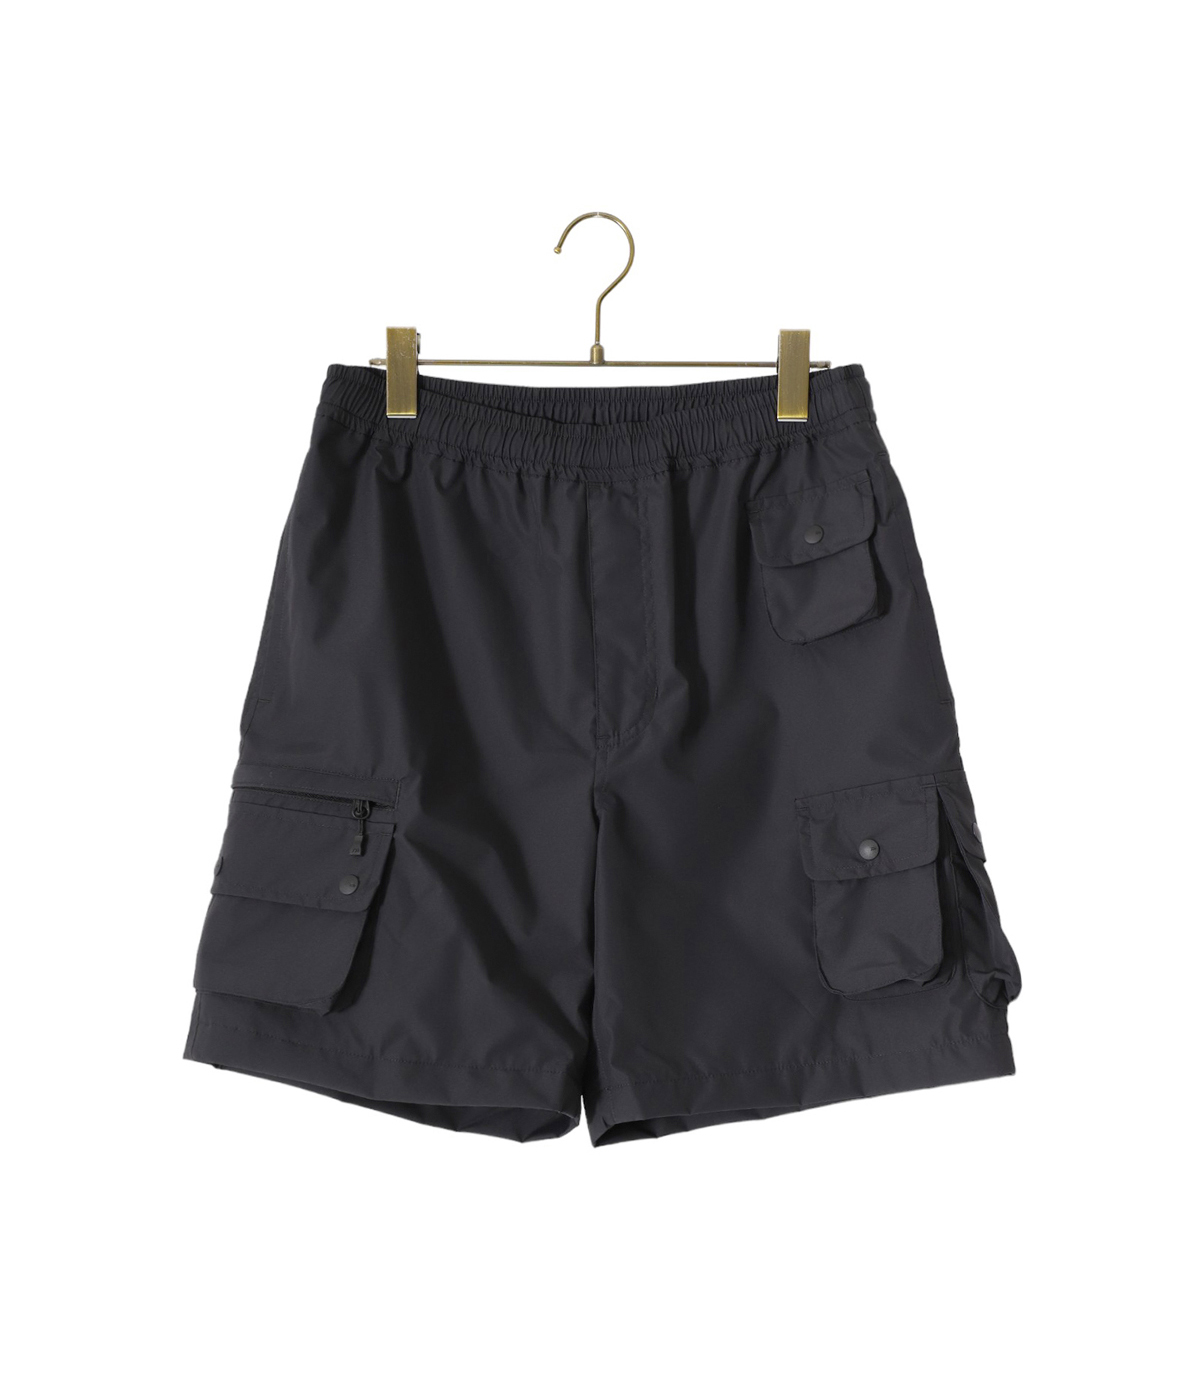 国産NEWdaiwa pier39 GORE-TEX shorts black s パンツ